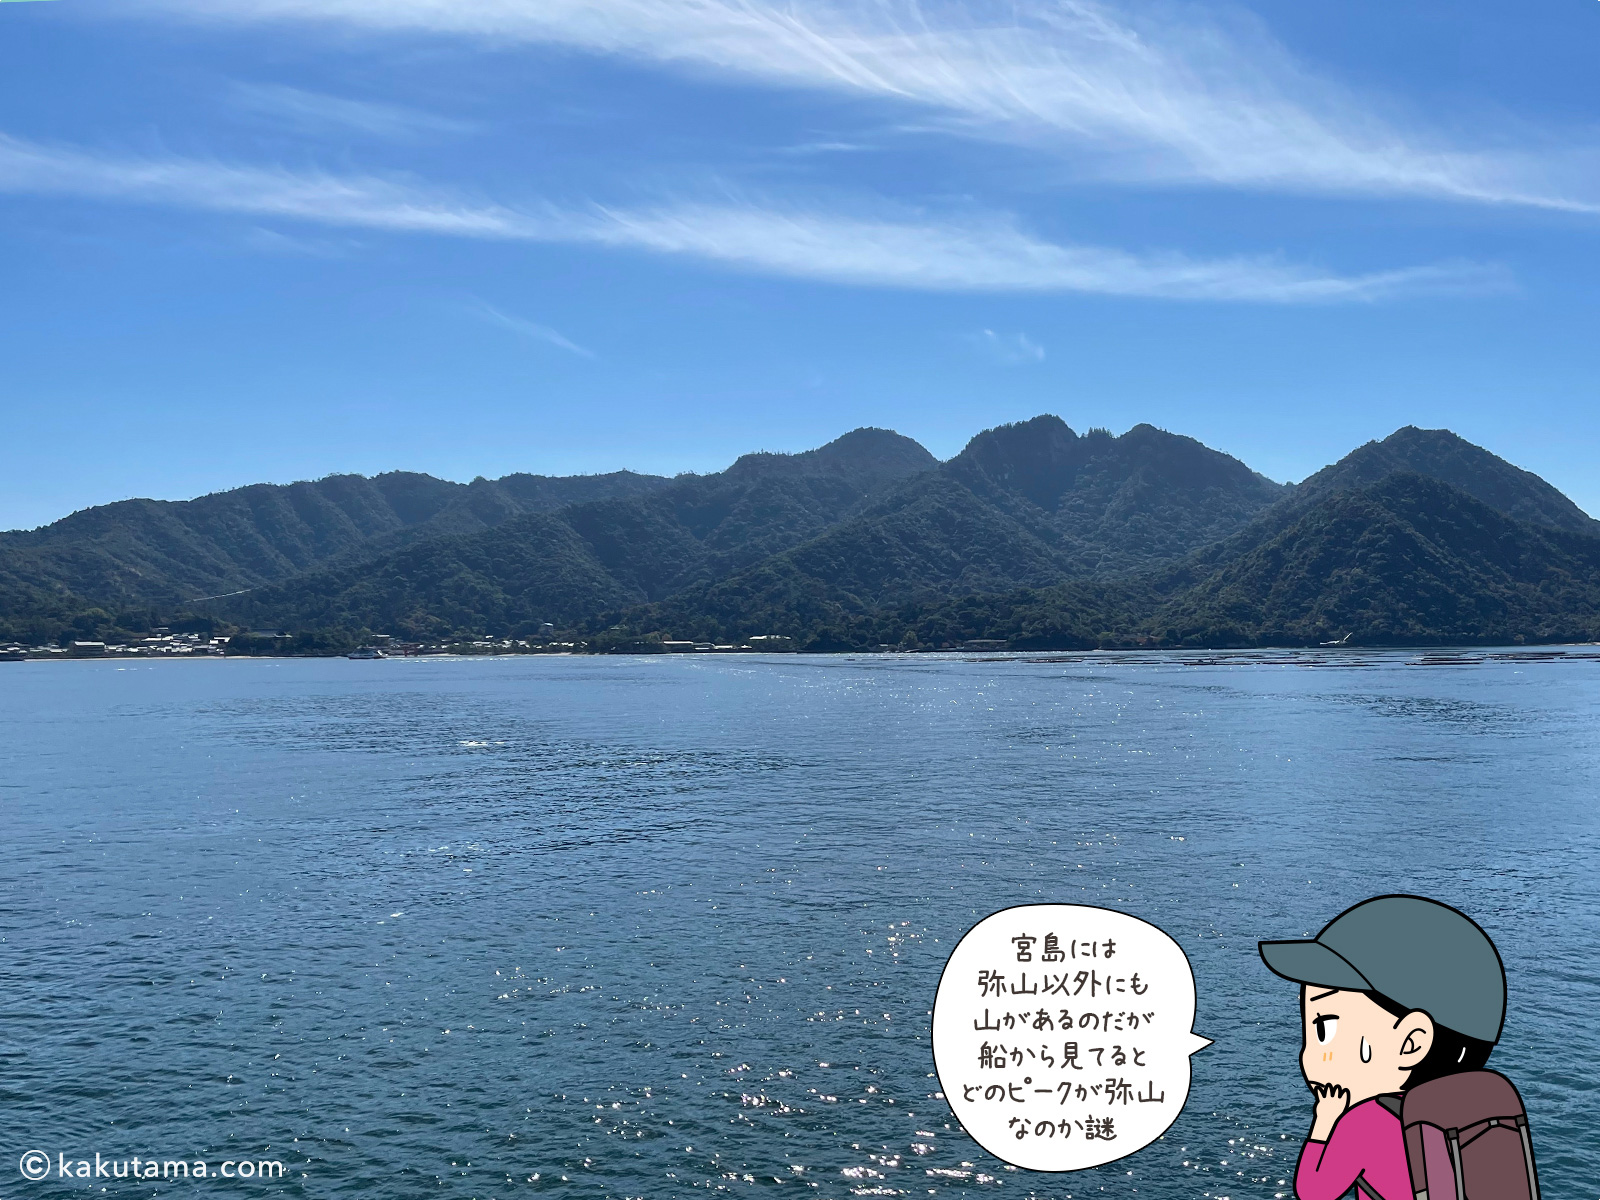 船から見た宮島、弥山がドコだかわからない写真と登山者のイラスト